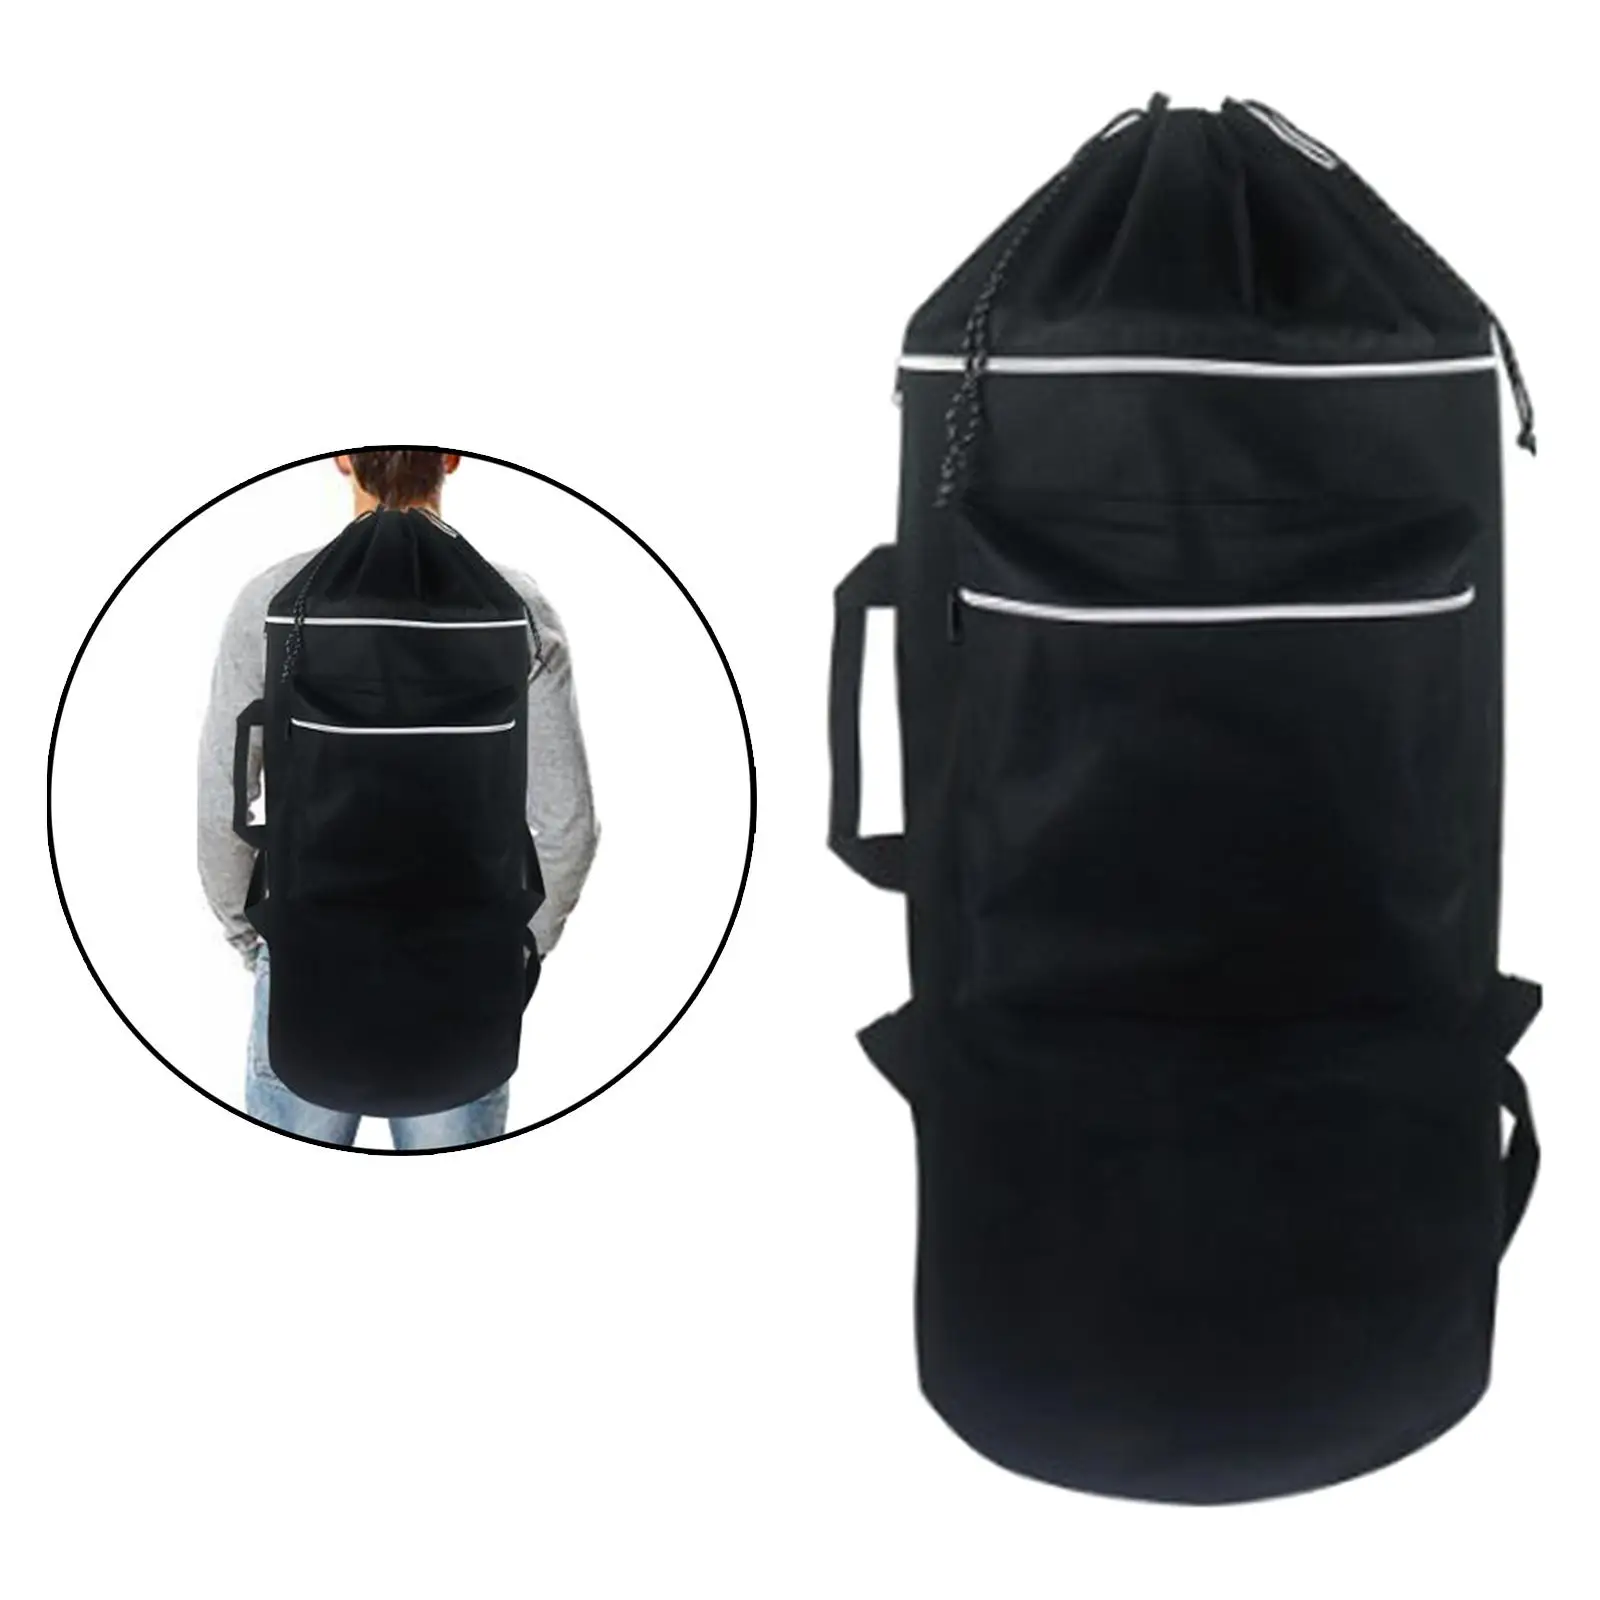 Skateboard Backpack, , 600D Oxford Cloth, Adjustable Shoulder Straps